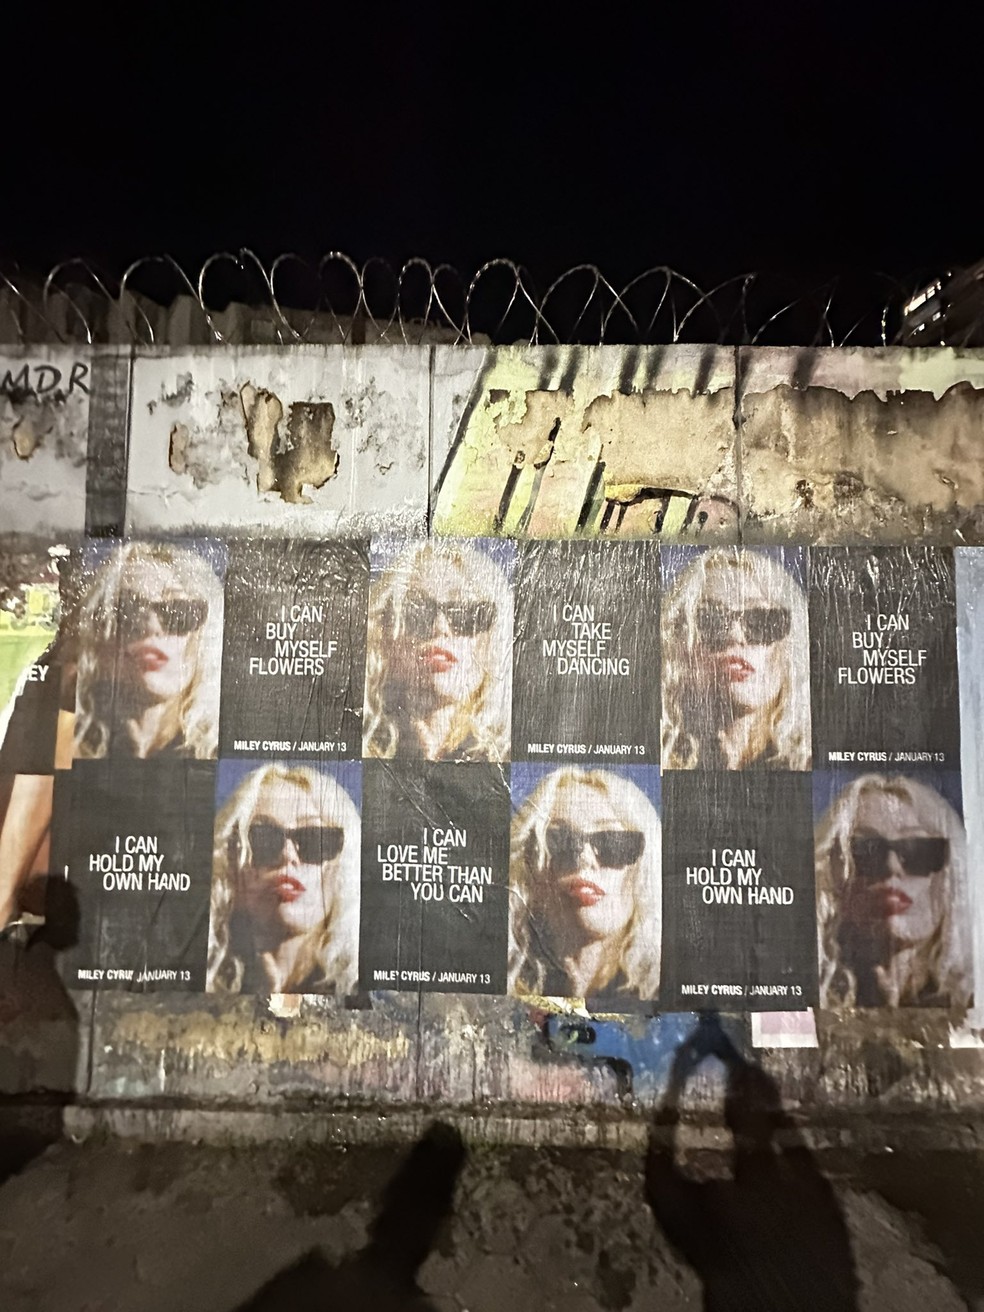 Cartaz de divulgação de Miley Cyrus expostos no centro da cidade do Rio de Janeiro — Foto: Twitter/Reprodução